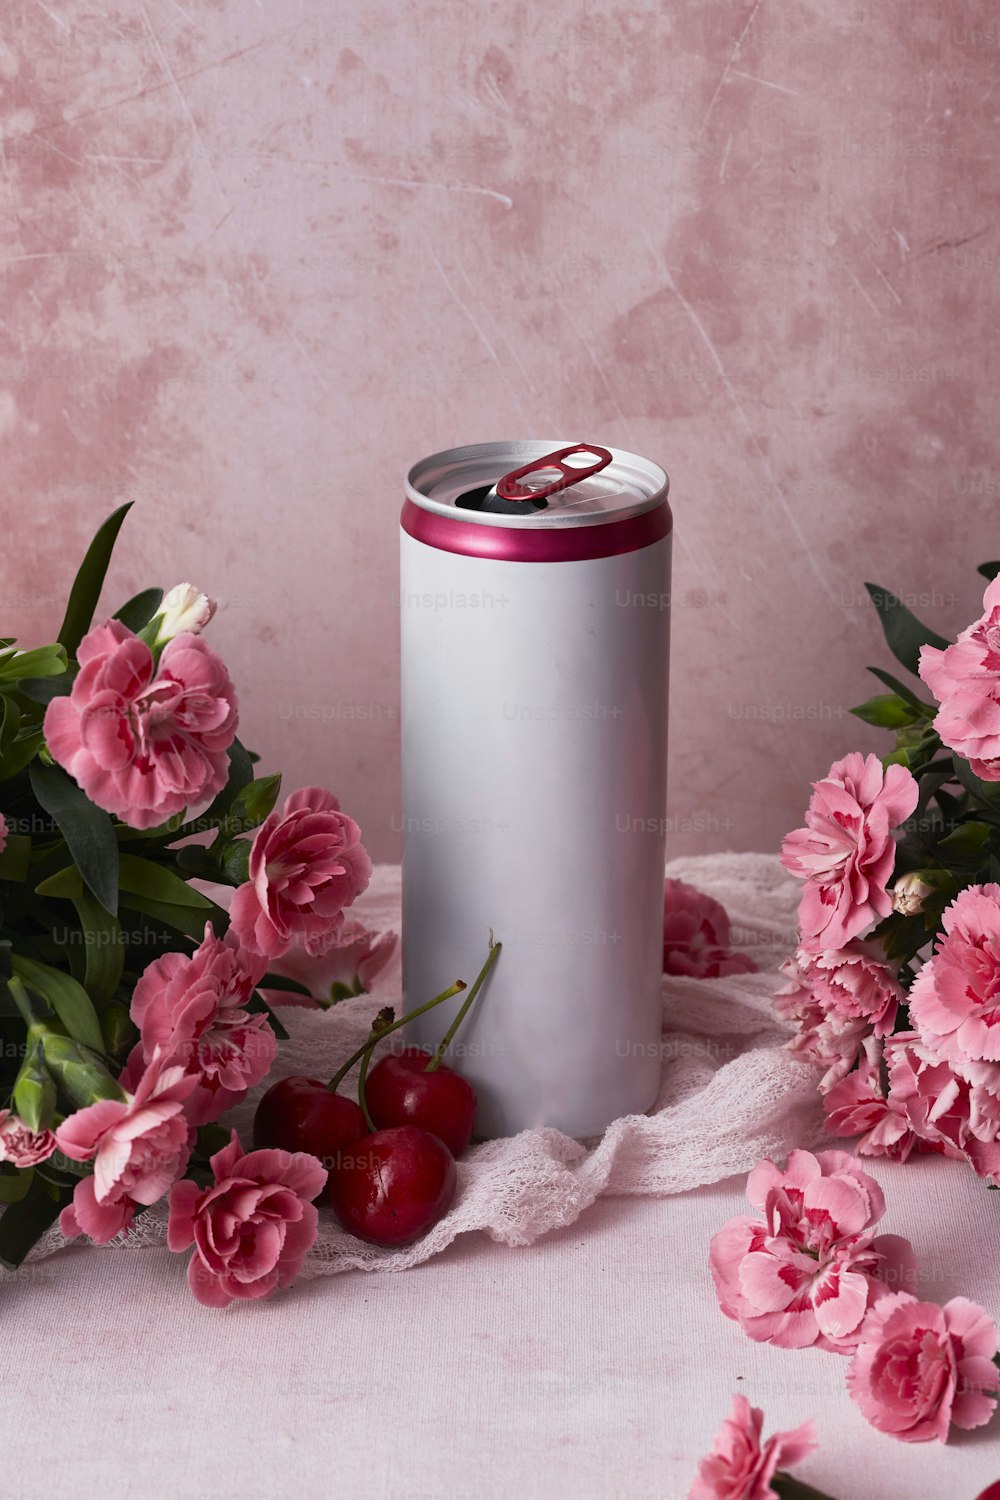 eine Dose Limonade, umgeben von rosa Blumen